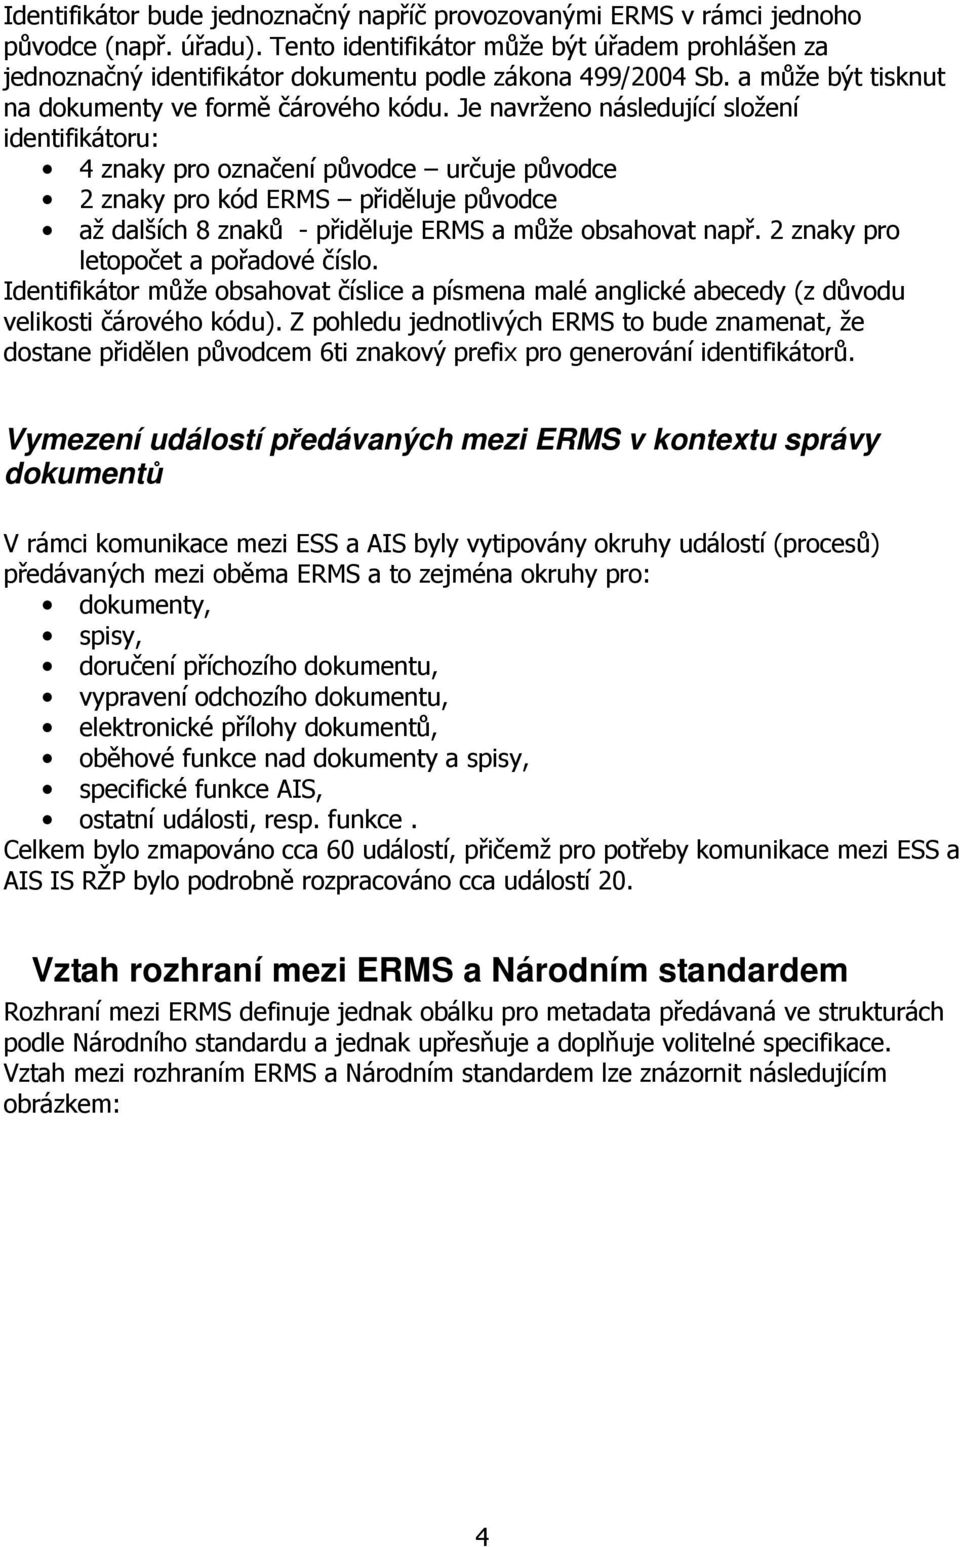 Je navrženo následující složení identifikátoru: 4 znaky pro označení původce určuje původce 2 znaky pro kód ERMS přiděluje původce až dalších 8 znaků - přiděluje ERMS a může obsahovat např.